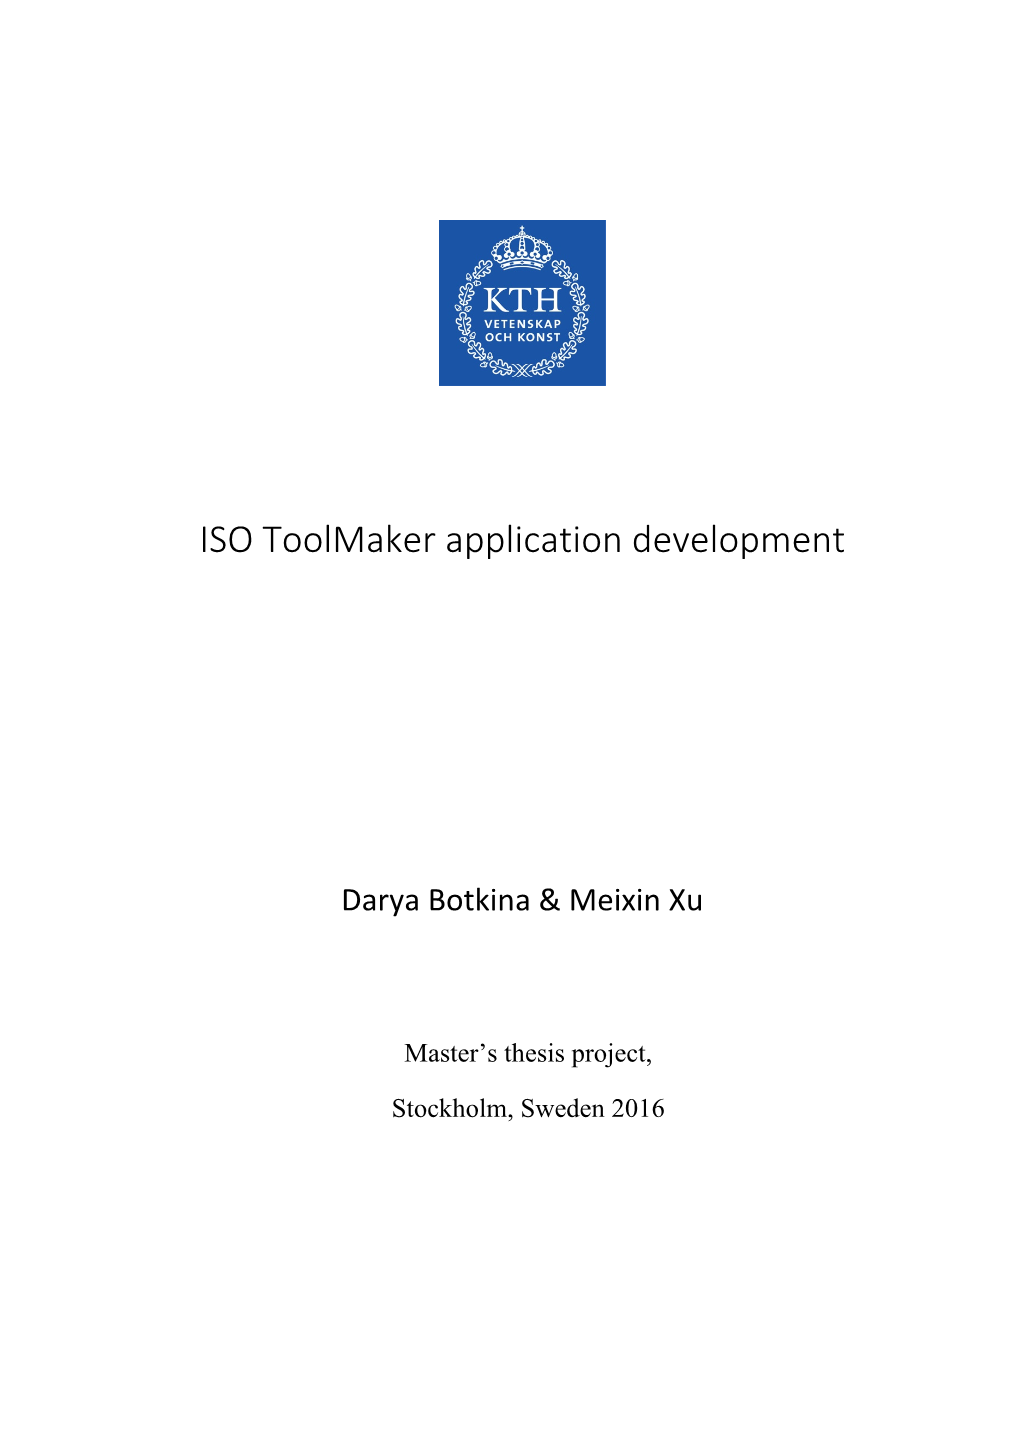 ISO Toolmaker Application Development